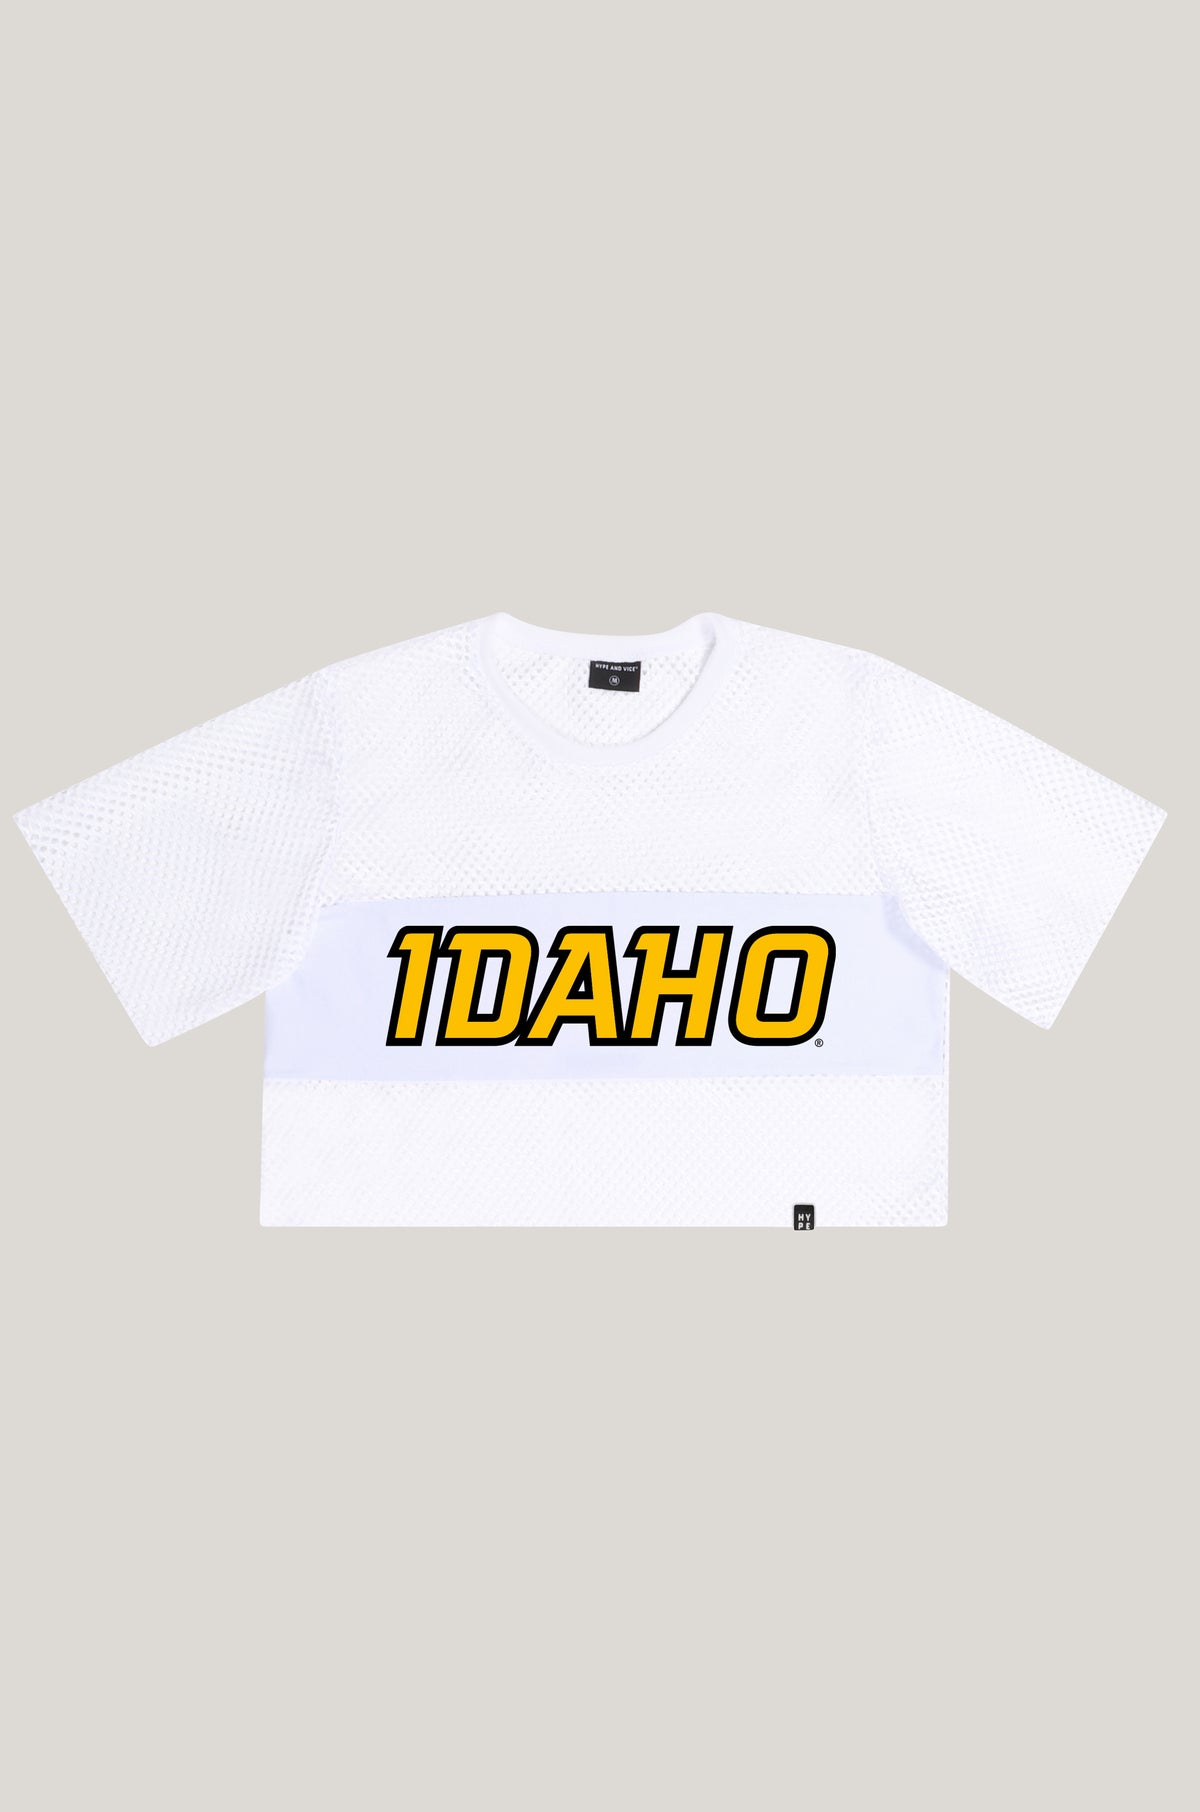 Idaho Mesh Tee